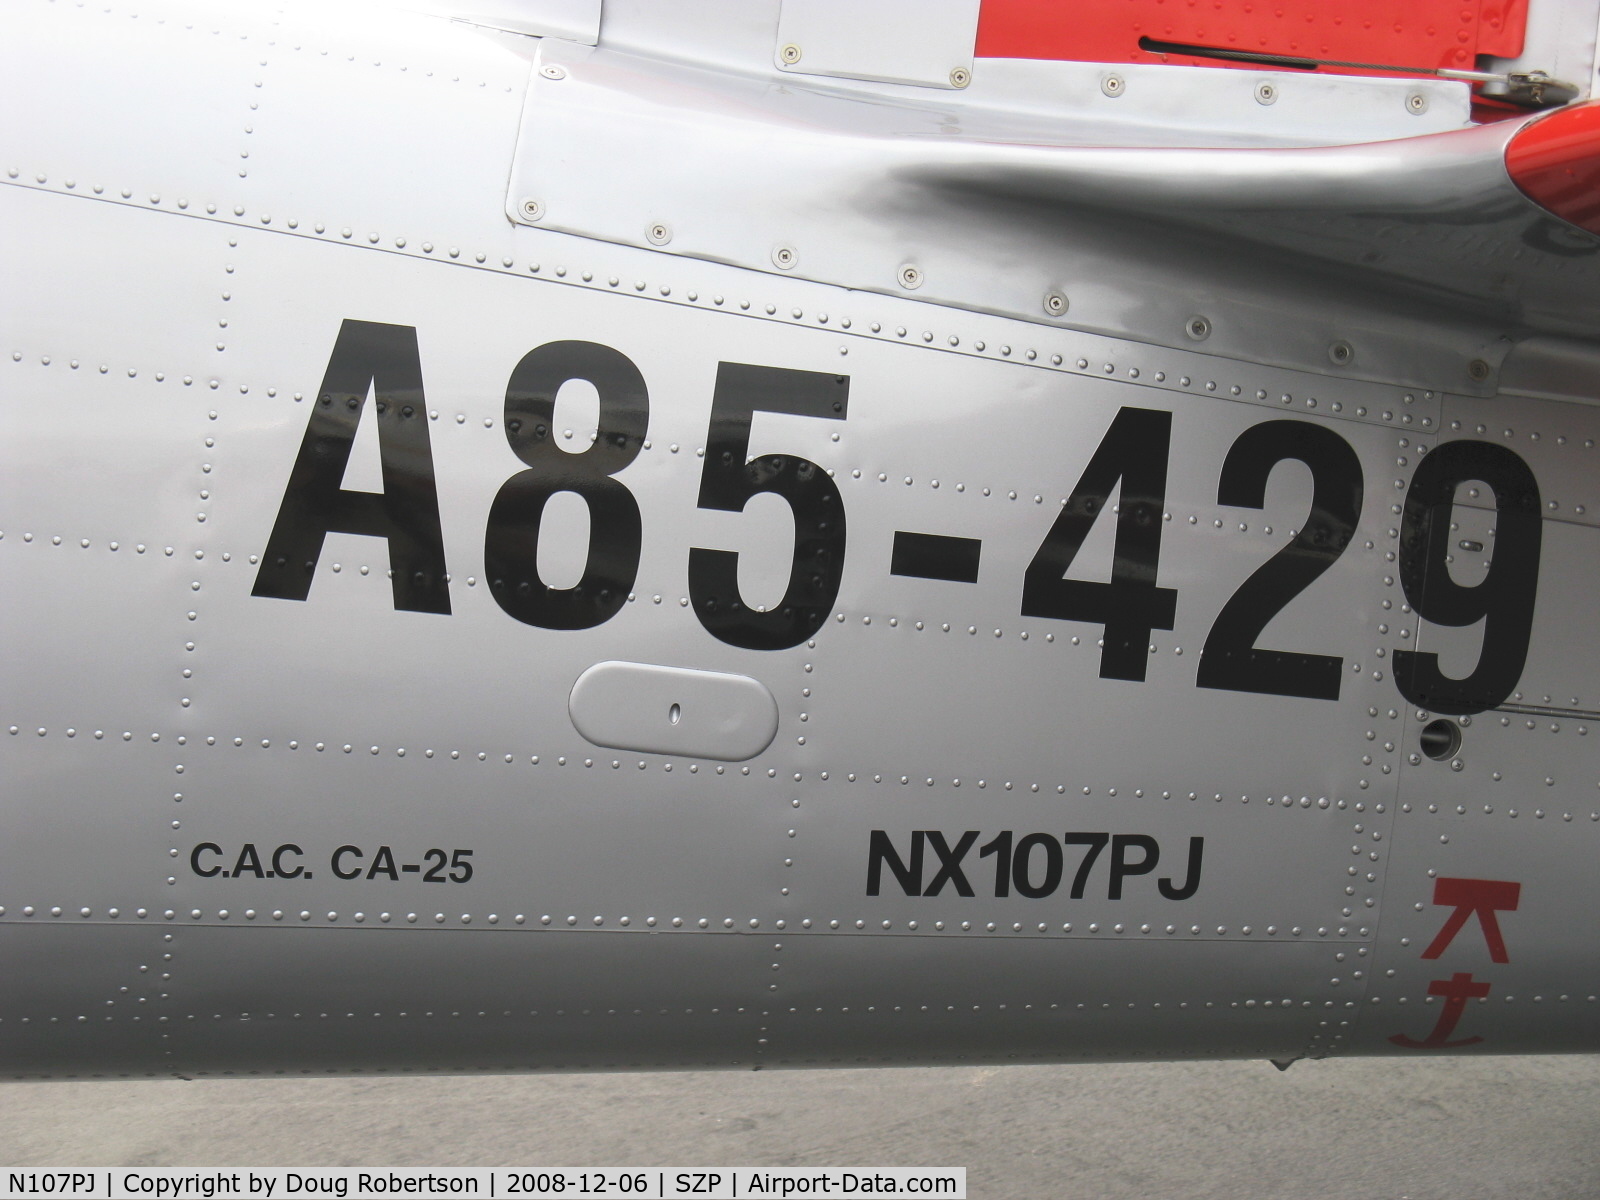 N107PJ, 1959 Commonwealth CA-25 Winjeel C/N CA25-29, As NX107PJ-1959 Commonwealth CA-25 WINJEEL (YOUNG EAGLE), P&W R-985-AN-2 Wasp Jr. 450 Hp, serial data